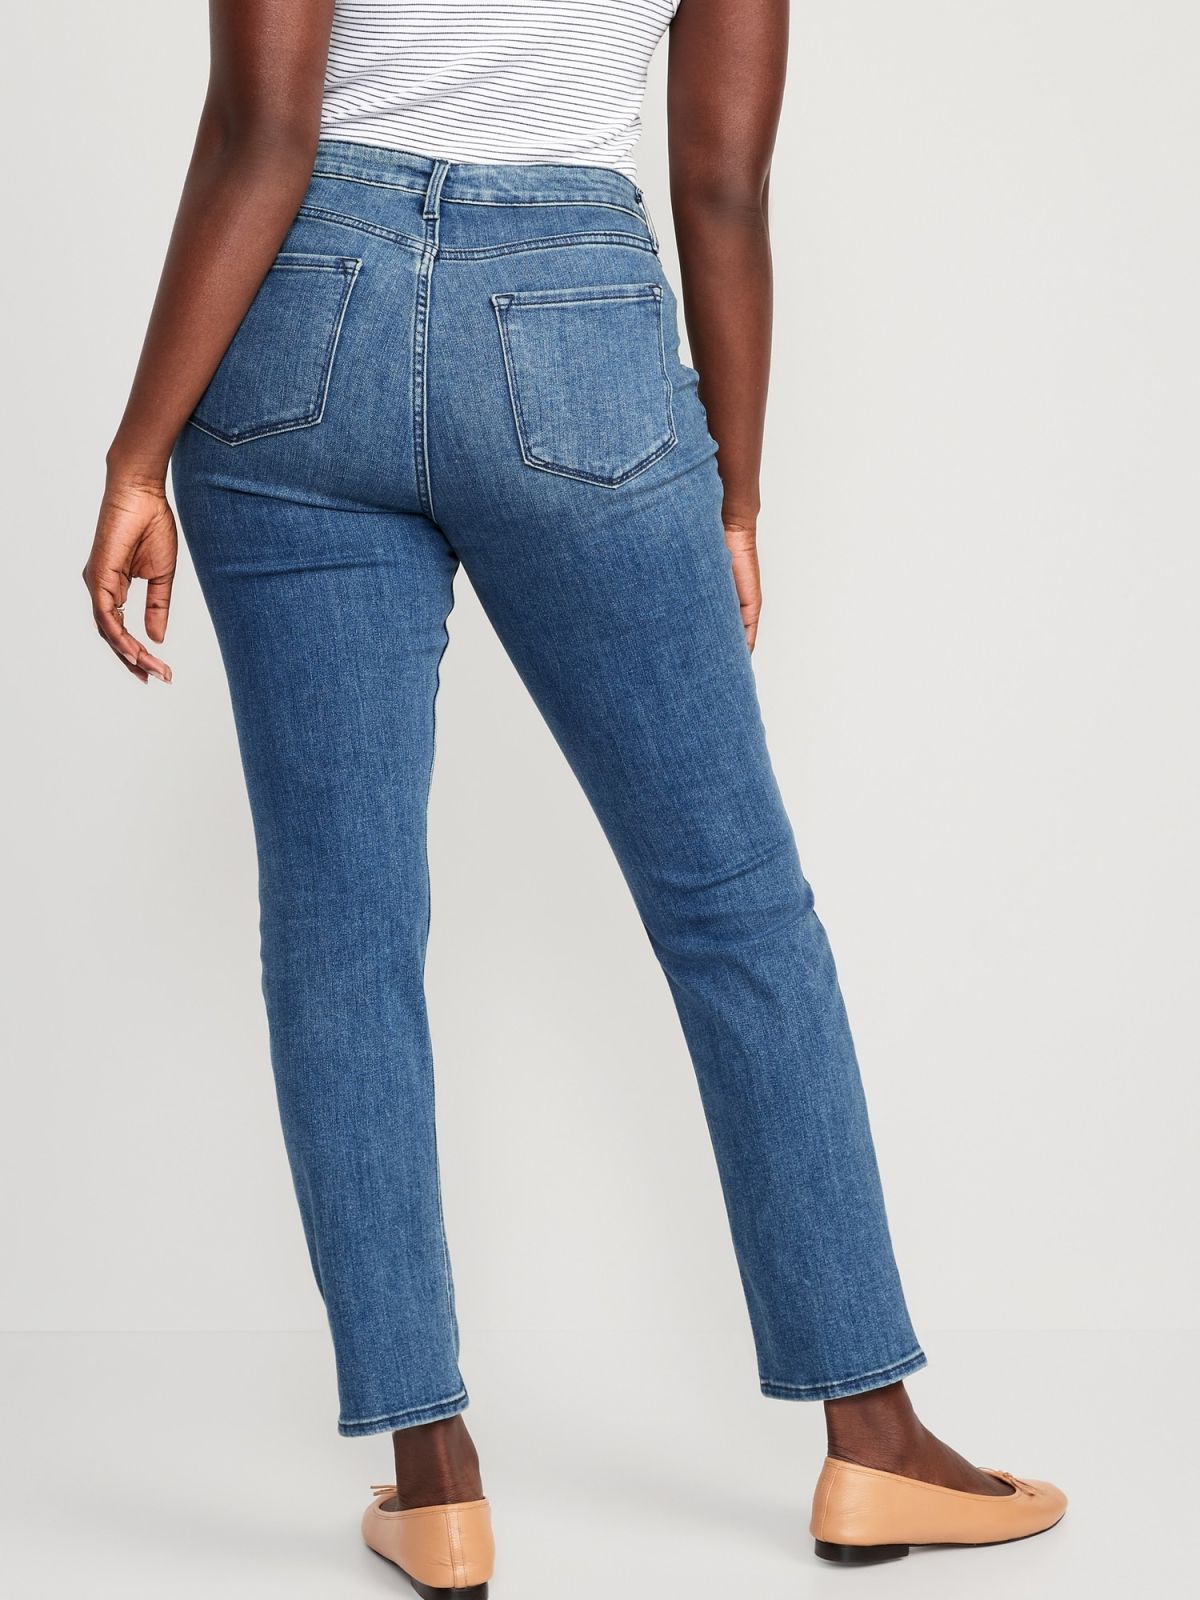  ג'ינס גזרה גבוהה / נשים של OLD NAVY